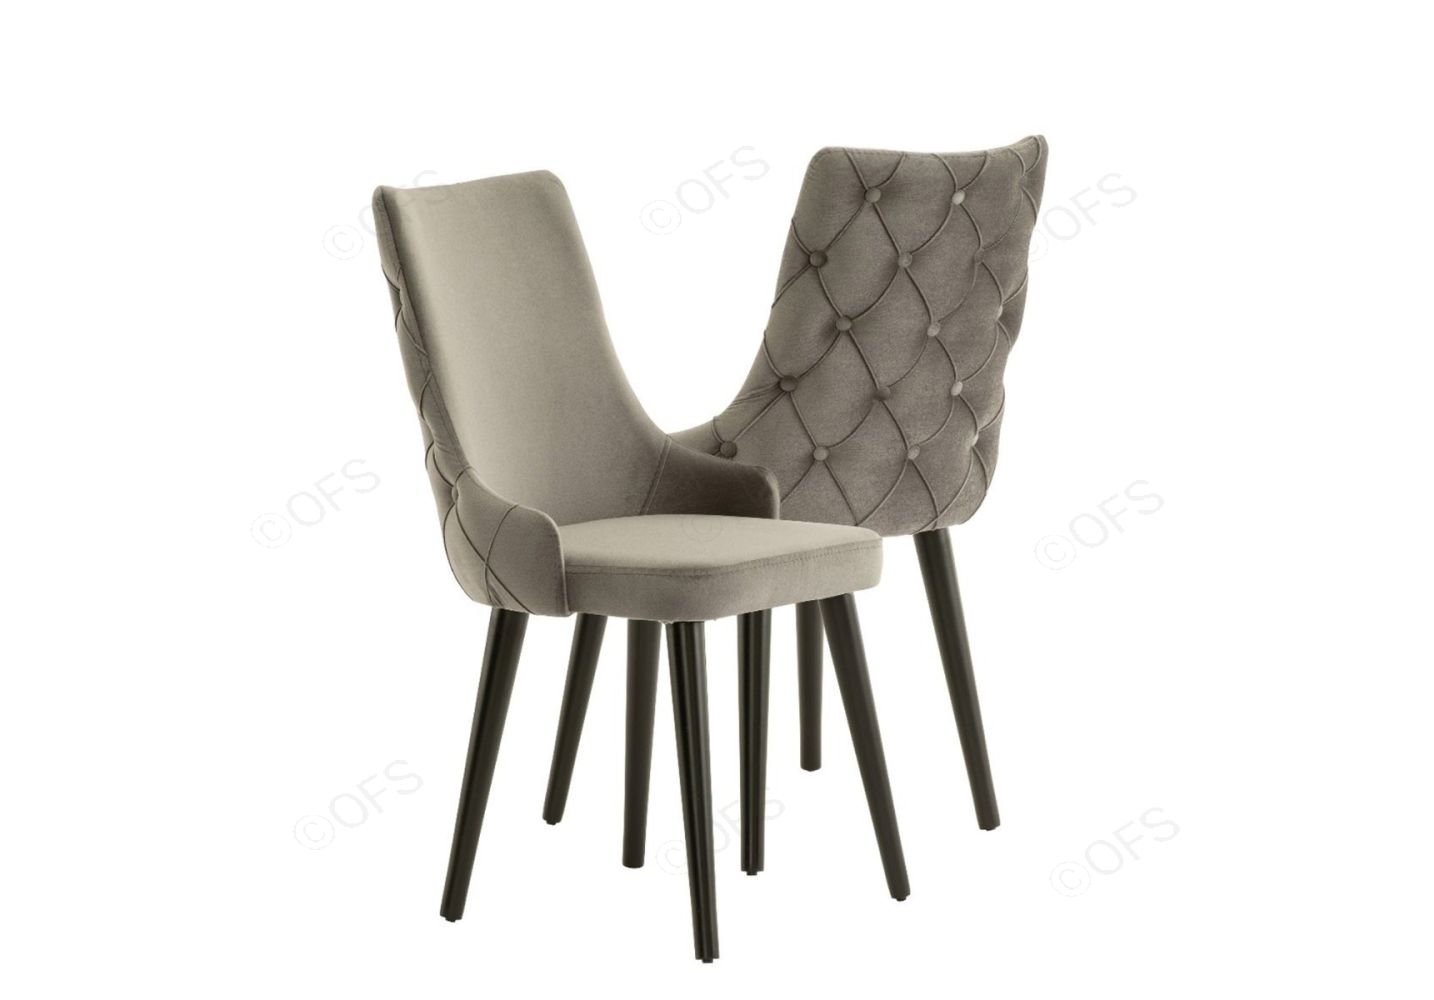 City chair grey velvet set of 6